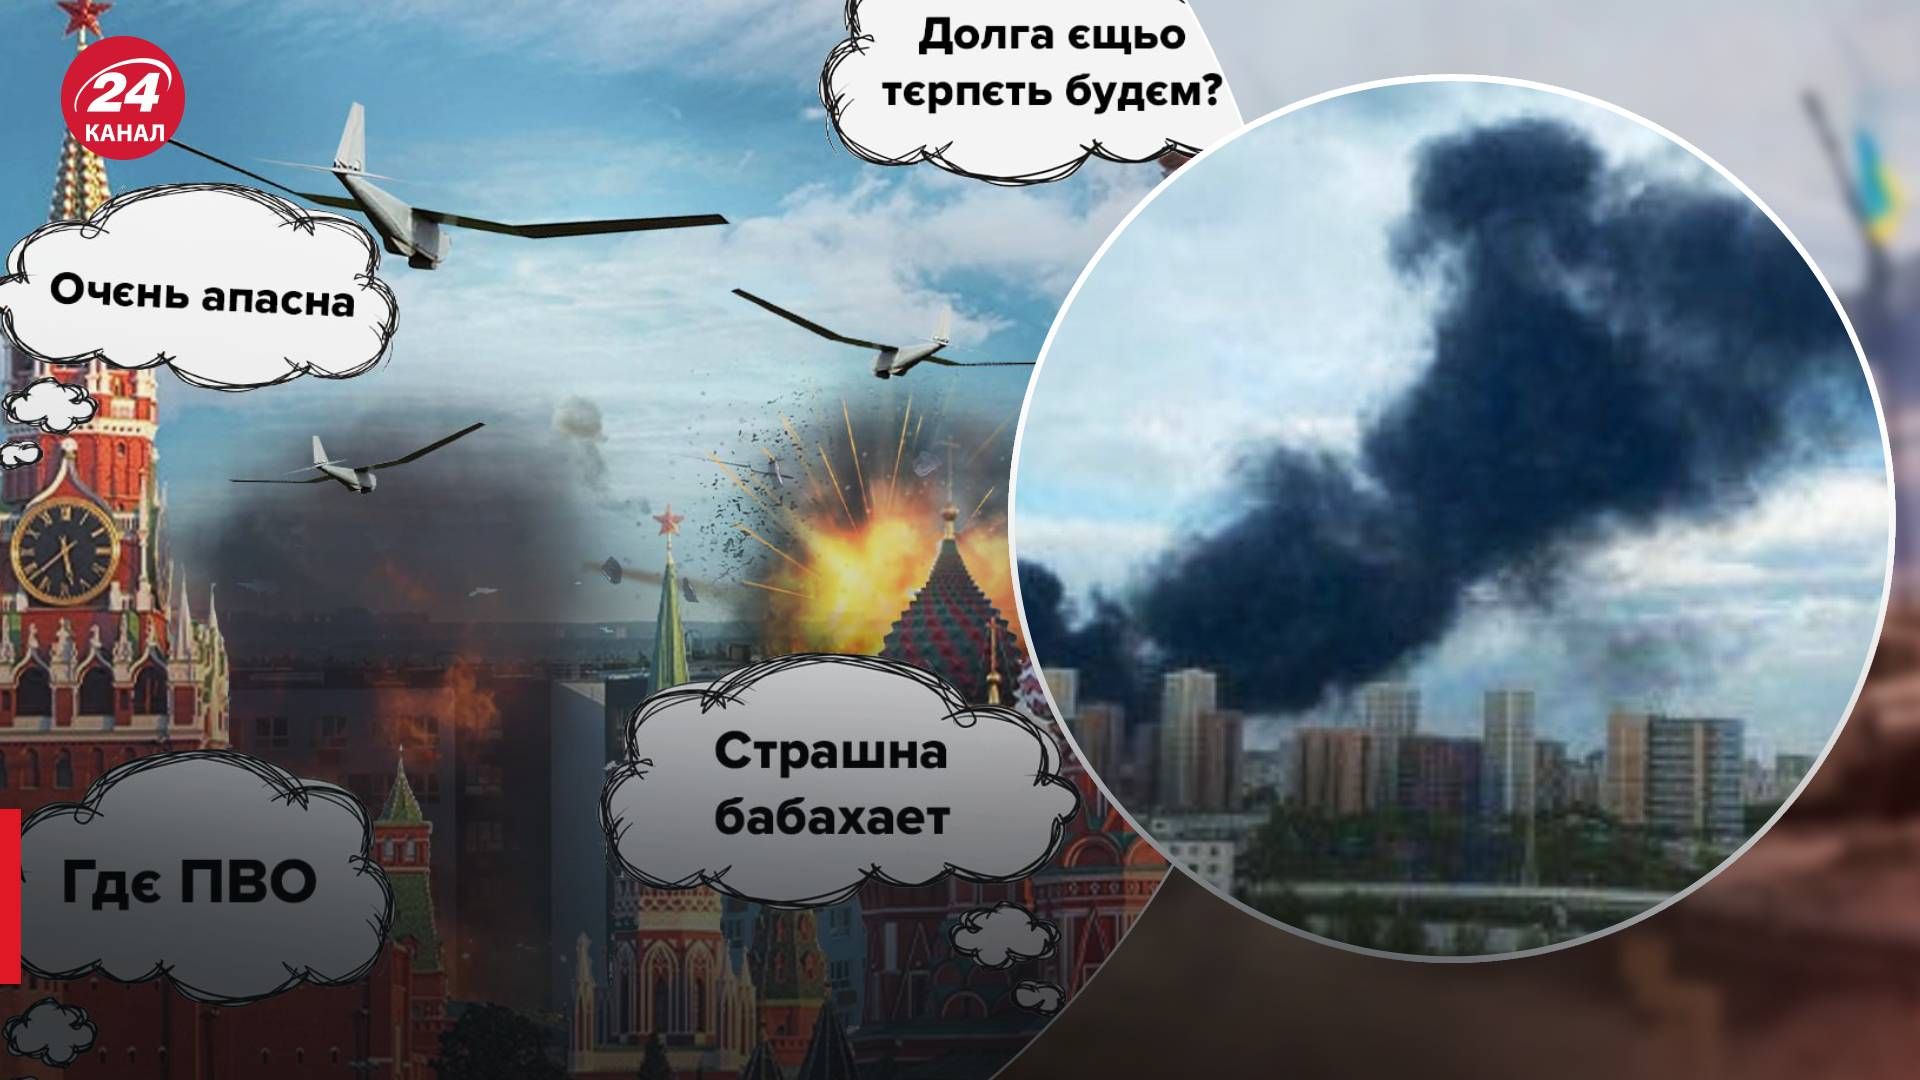 Дроны атаковали Московскую область - какую информацию это открыло Украине - 24 Канал